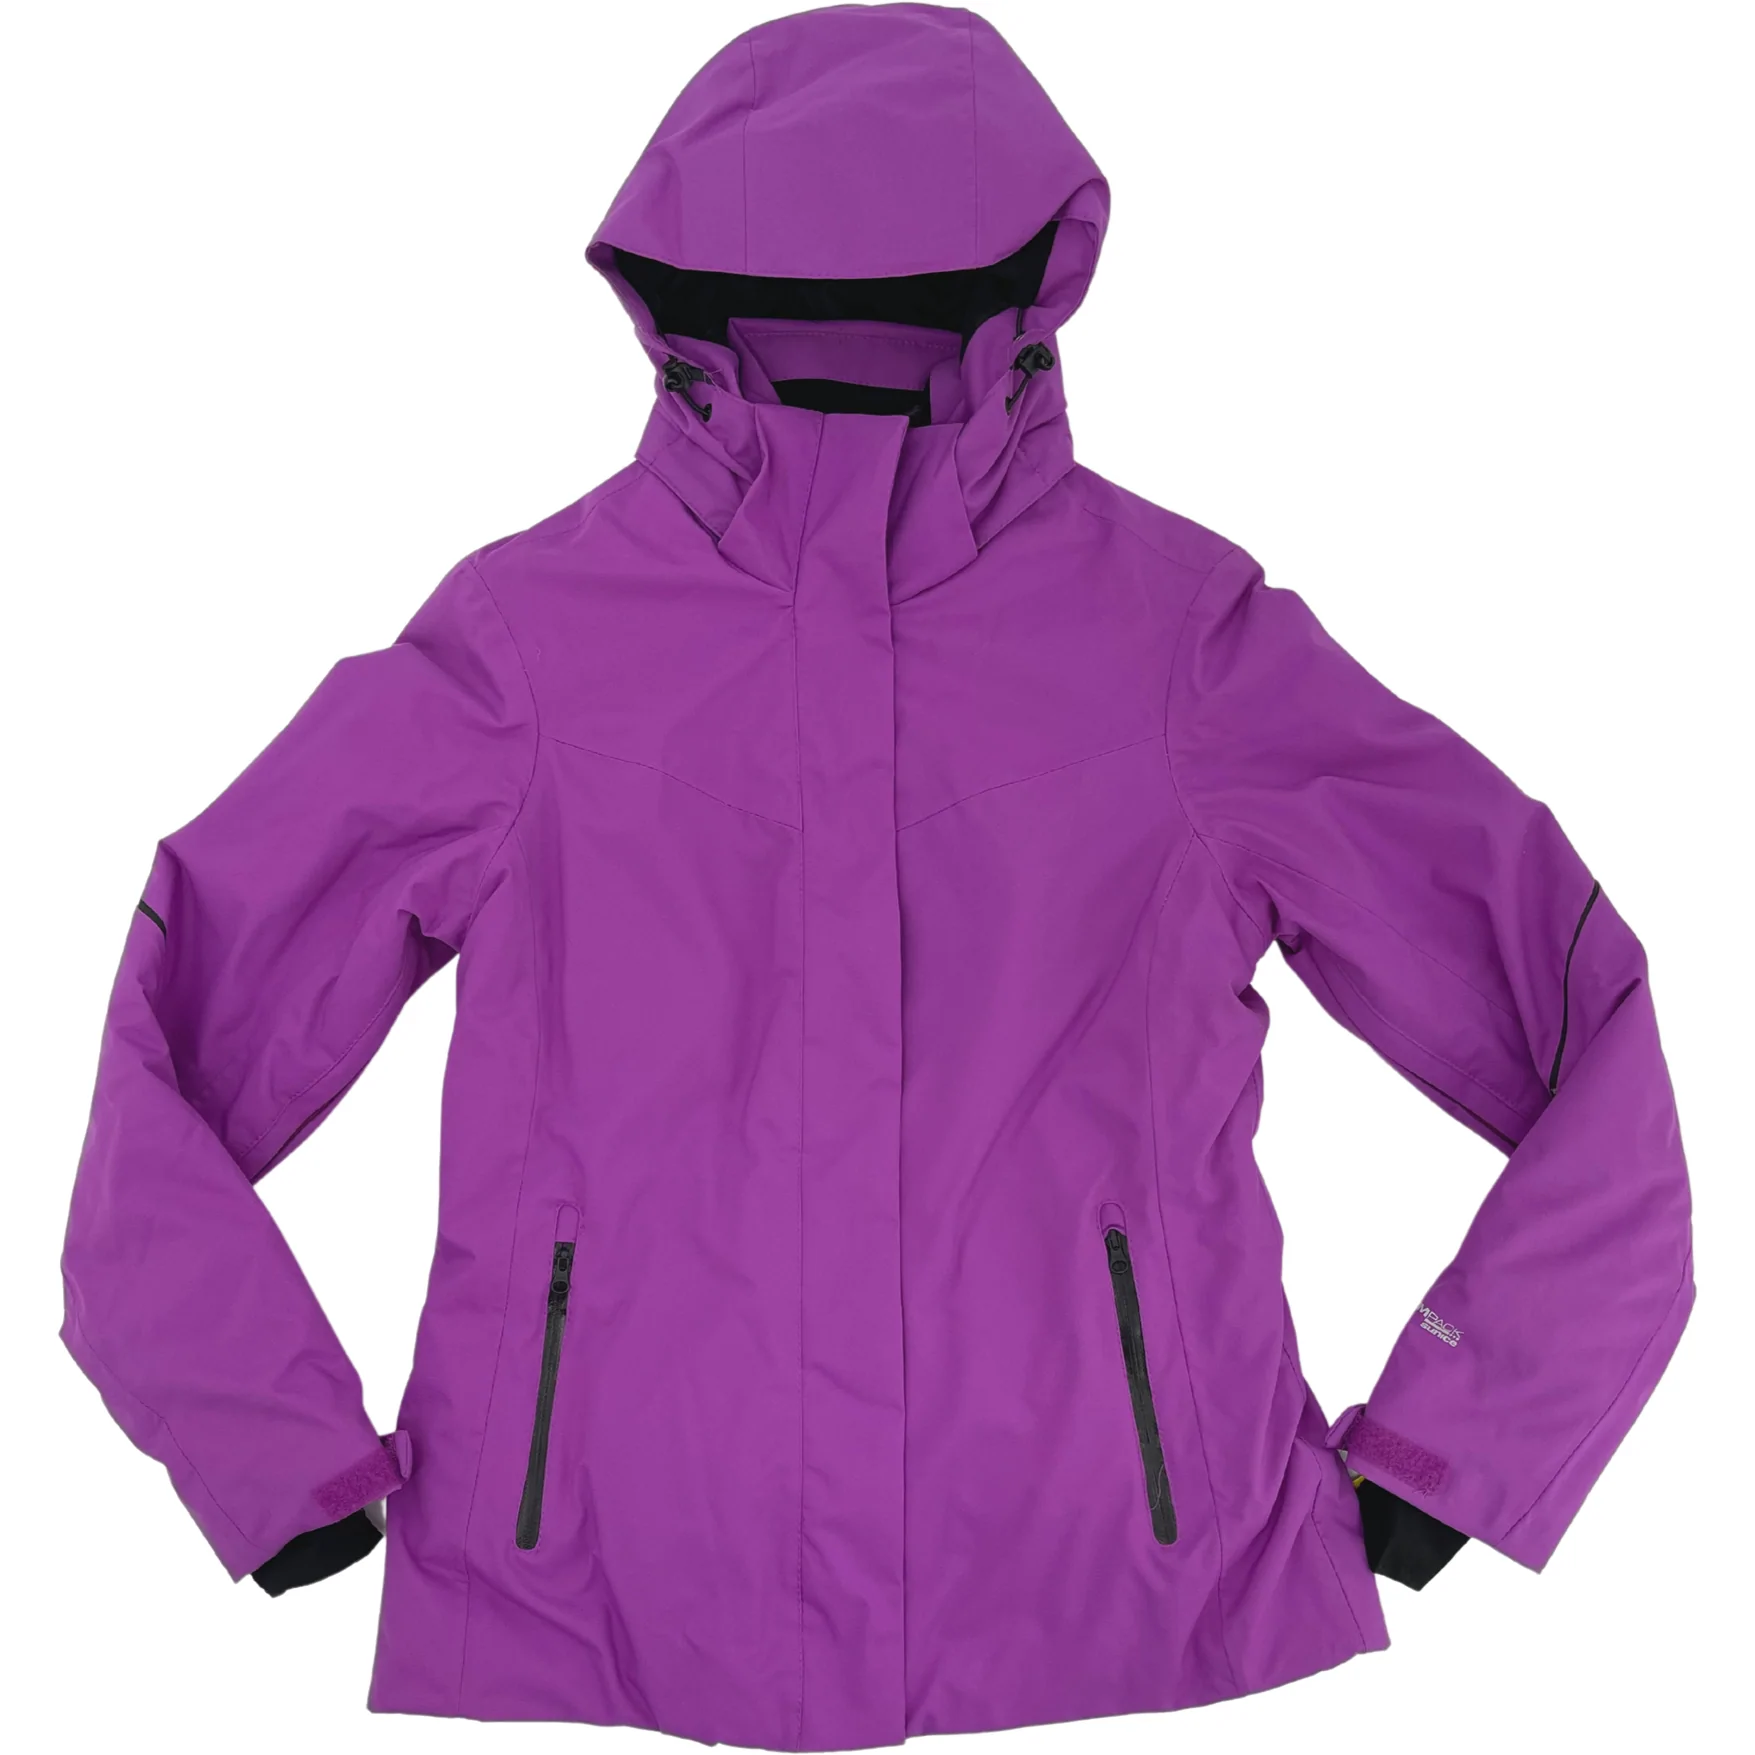 Stormpack Sunice Women's Winter Jacket / Outdoor Winter Gear / Purple / Size Small